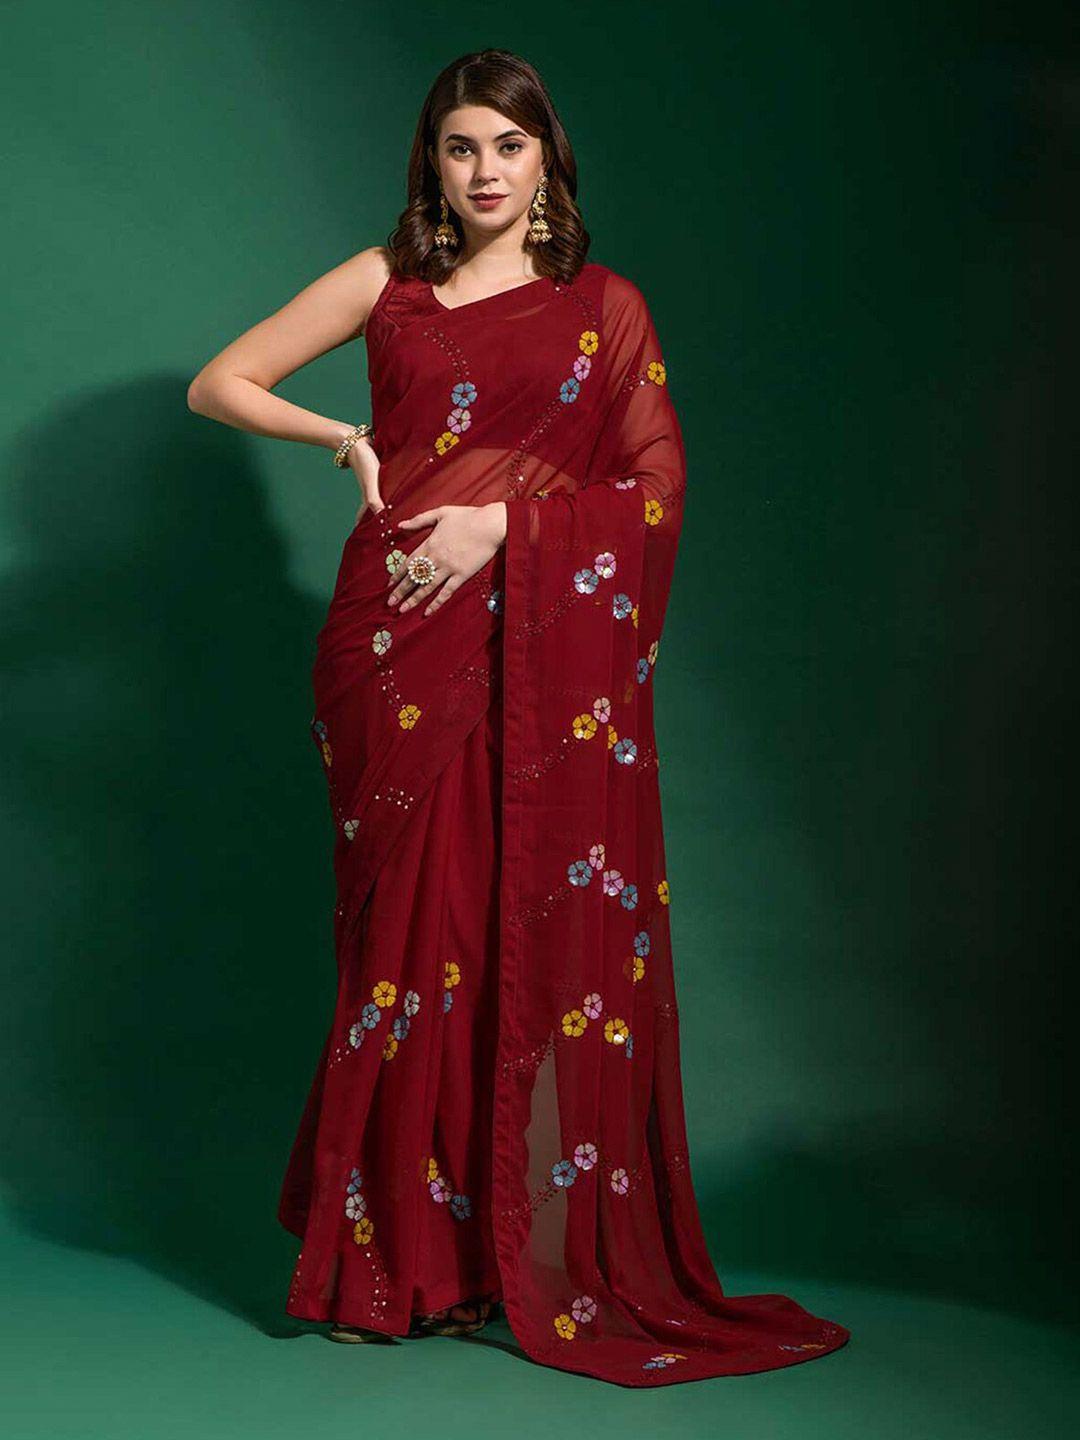 odette floral embroidered embellished saree